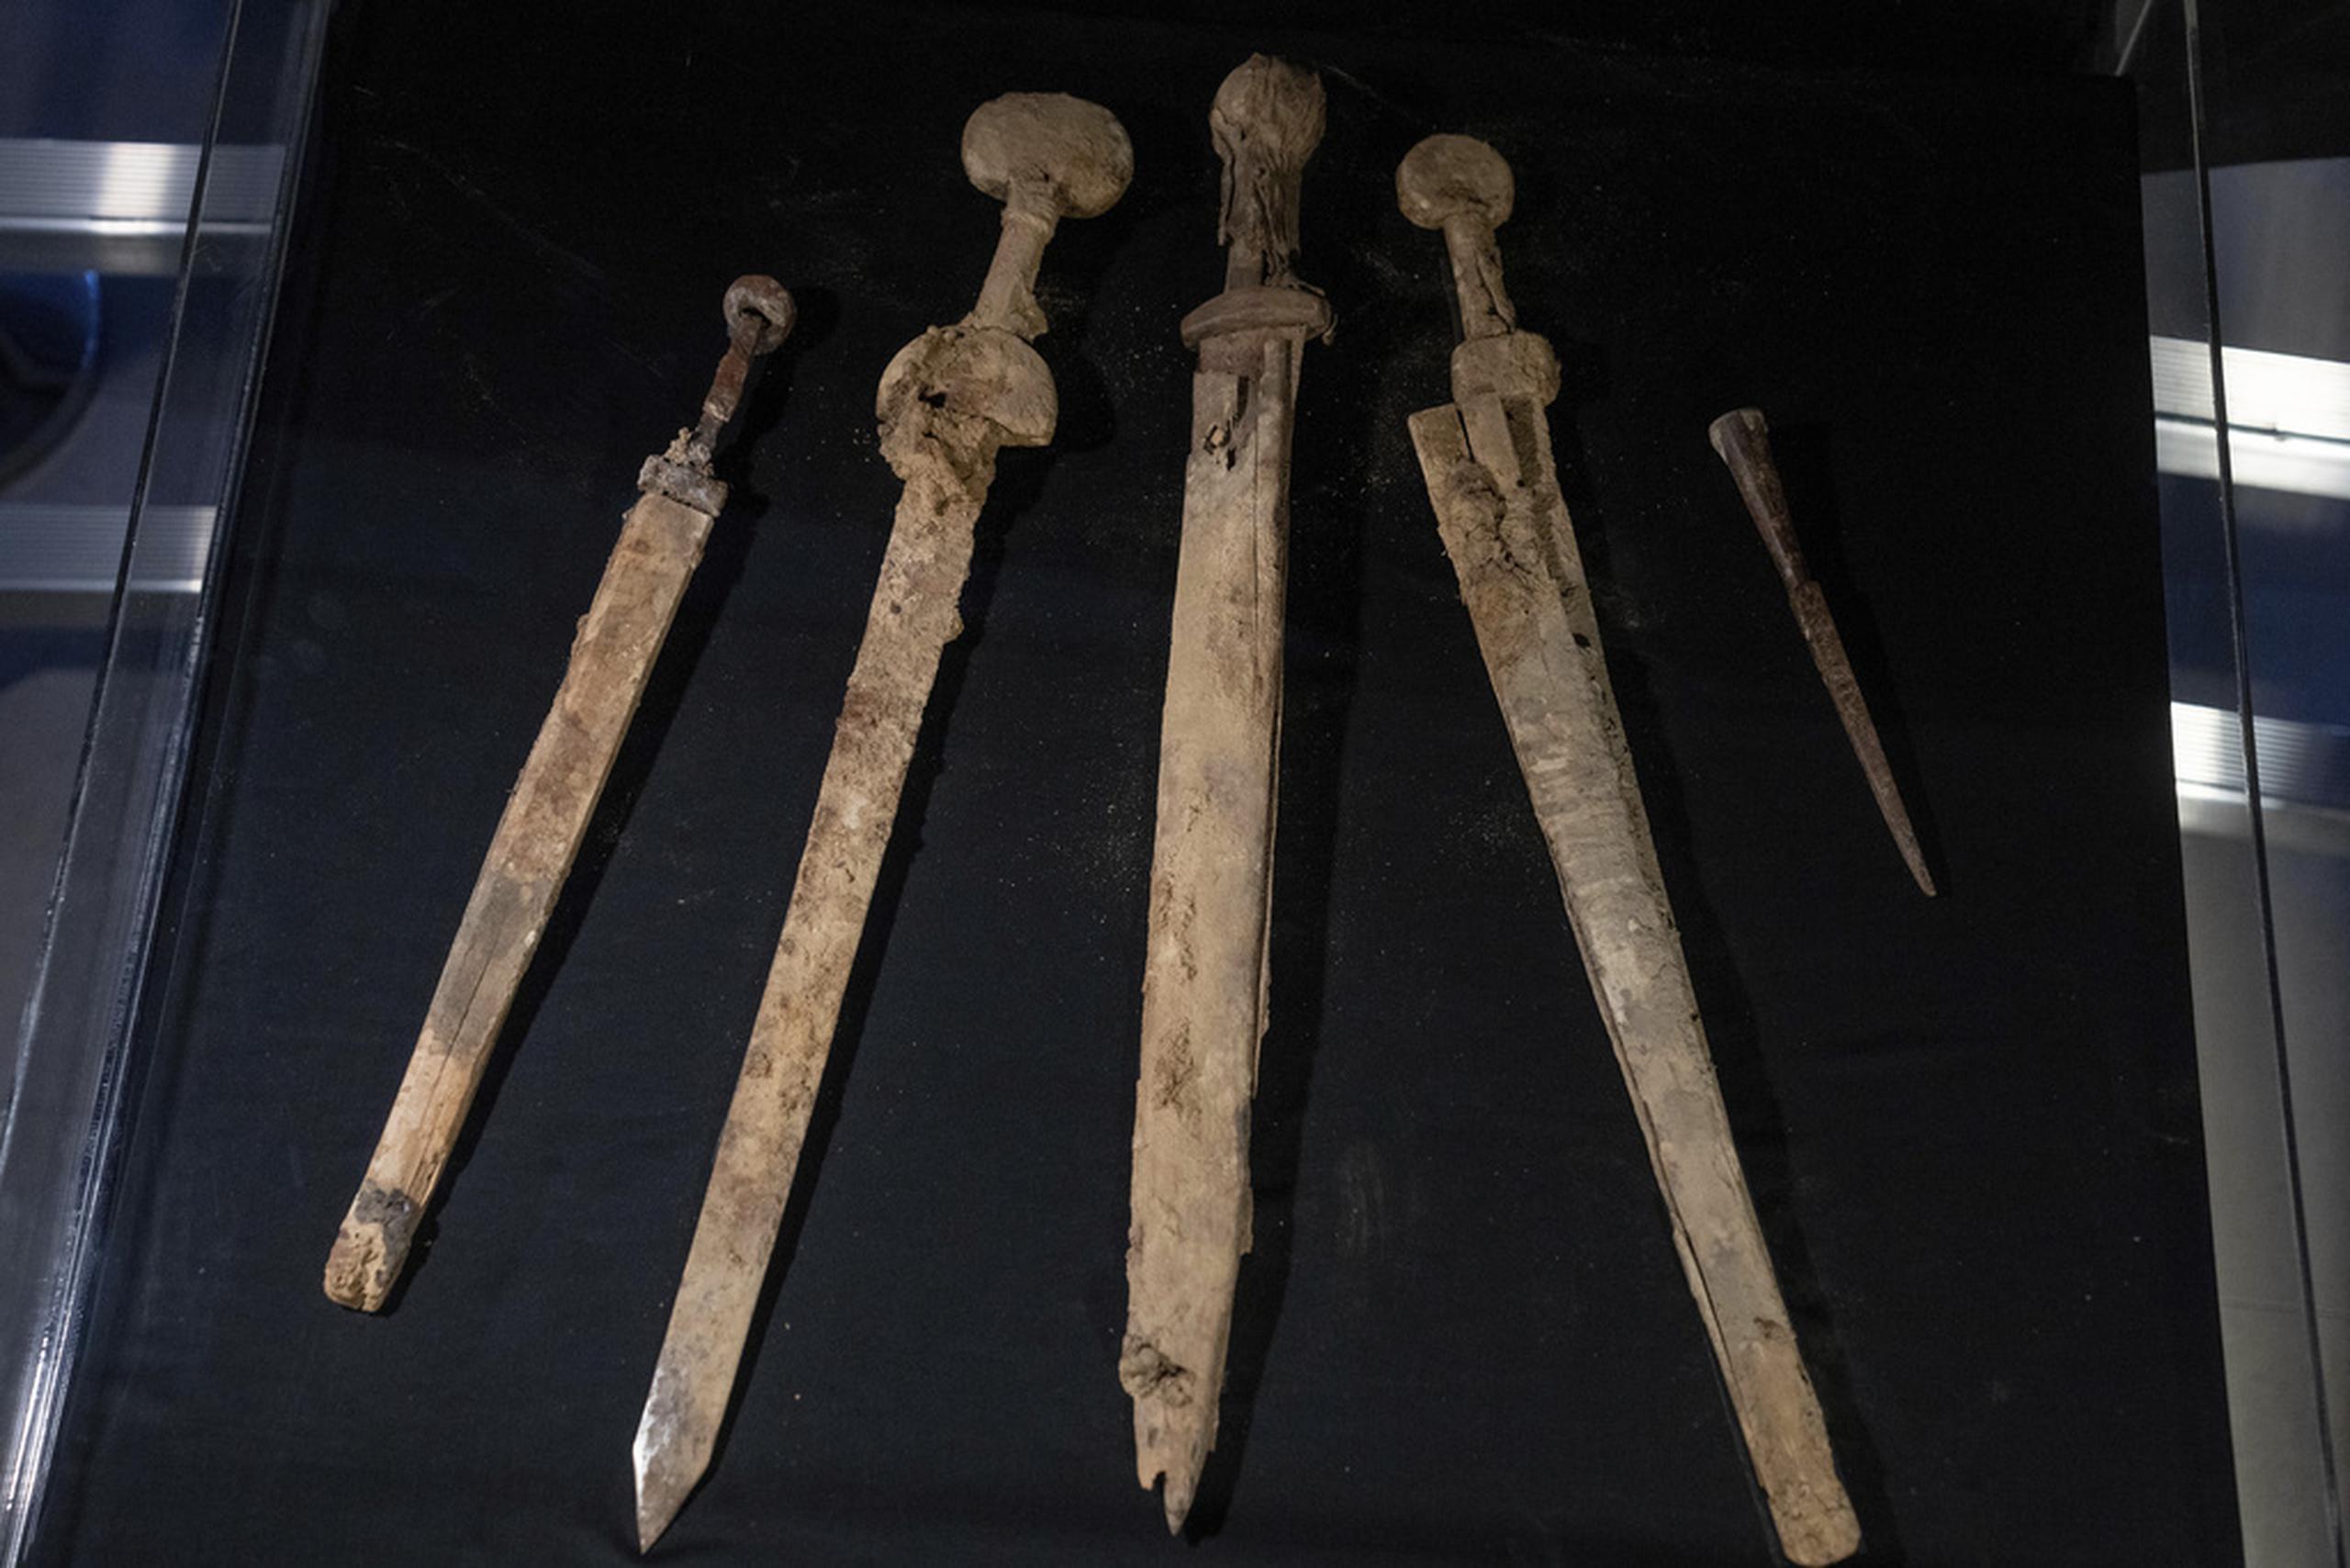 Las hojas metálicas de tres de las espadas tienen una longitud de entre 60 y 65 centímetros, y por su dimensión han sido identificadas como las espadas propias que tenían los militares romanos.